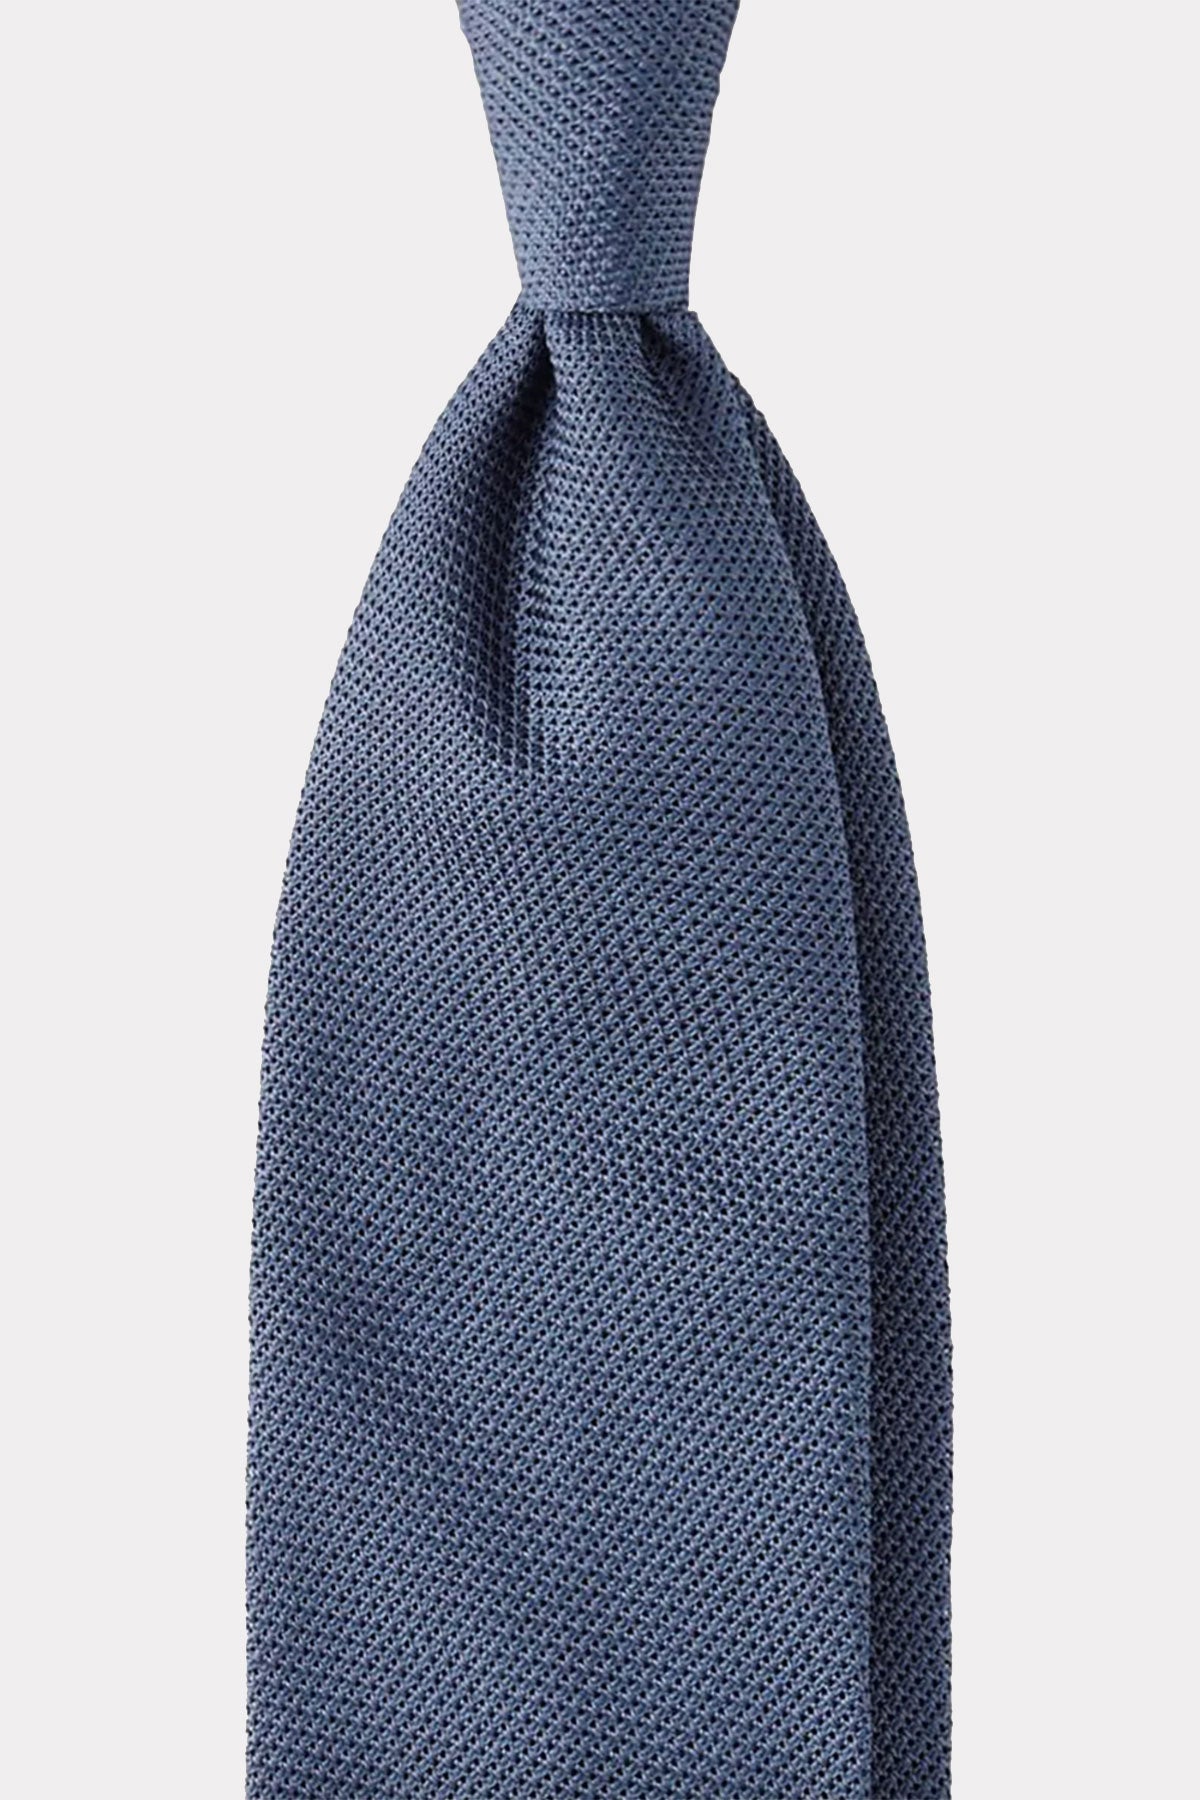 Krawatte in blau